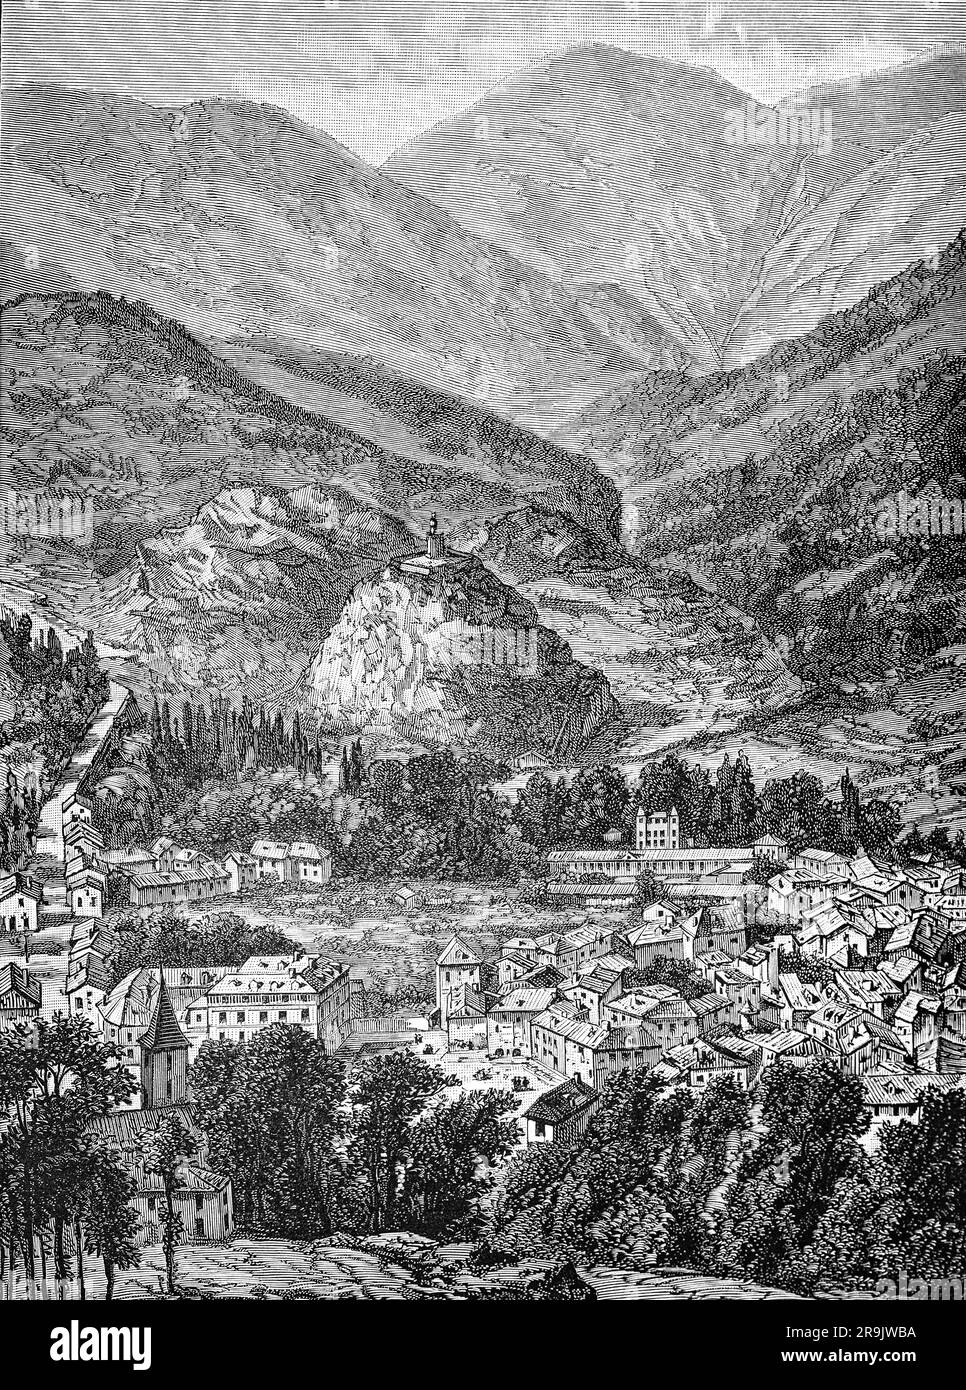 Eine Illustration aus dem späten 19. Jahrhundert von Tarascon-sur-Ariège, einer Gemeinde im Departement Ariège im Südwesten Frankreichs. Die Stadt liegt im Herzen der Ariège-Pyrenäen-Täler und ist mit ihrem Castella-Turm, der seit dem 18. Jahrhundert auf dem Felsen steht, aus der Ferne zu sehen. Diese hübsche kleine Stadt, die von Ariège und Vicdessos umgeben ist, ist das Tor zu Haute-Ariège. Stockfoto